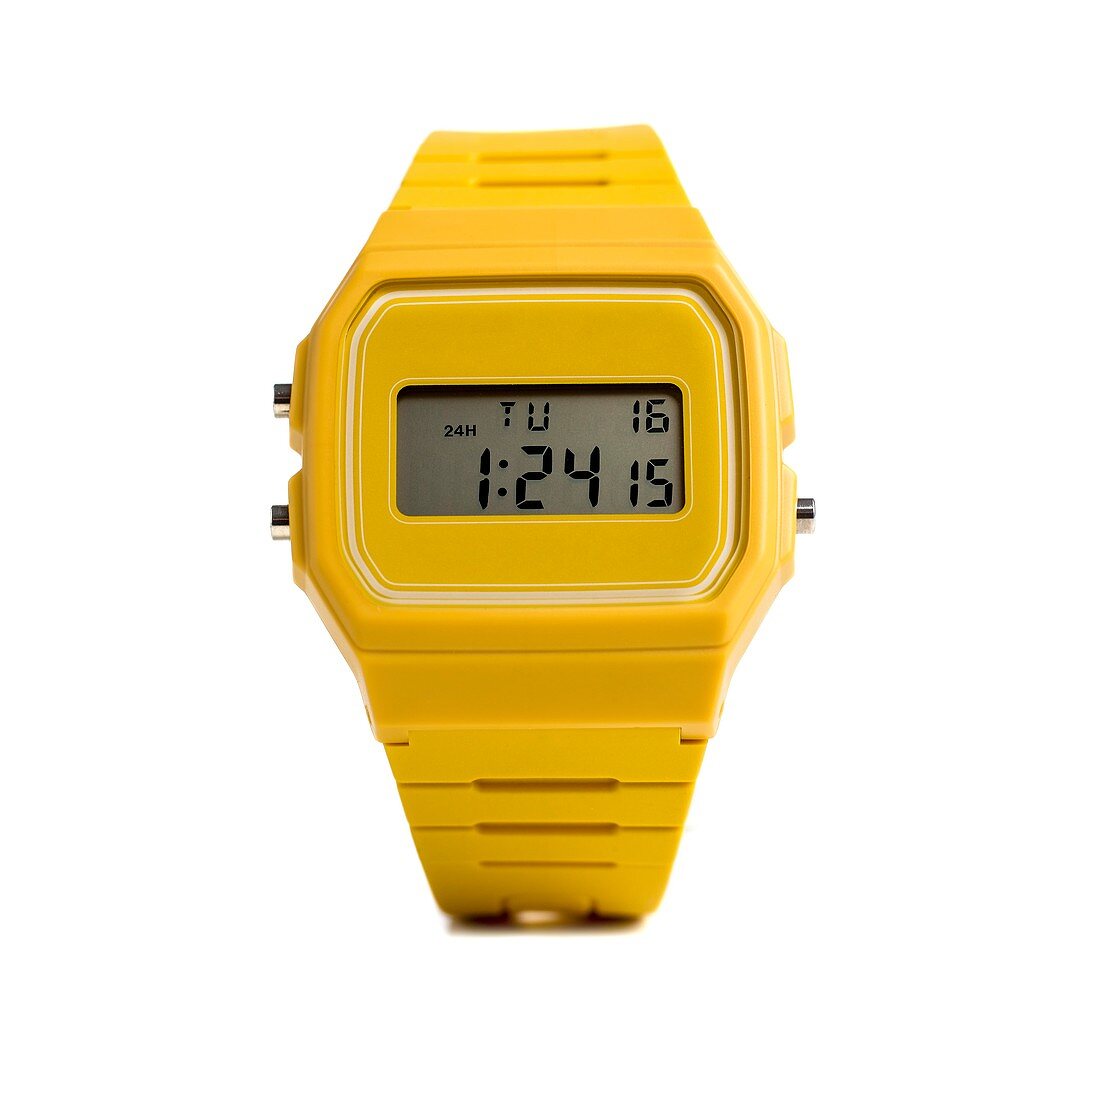 Digital wristwatch